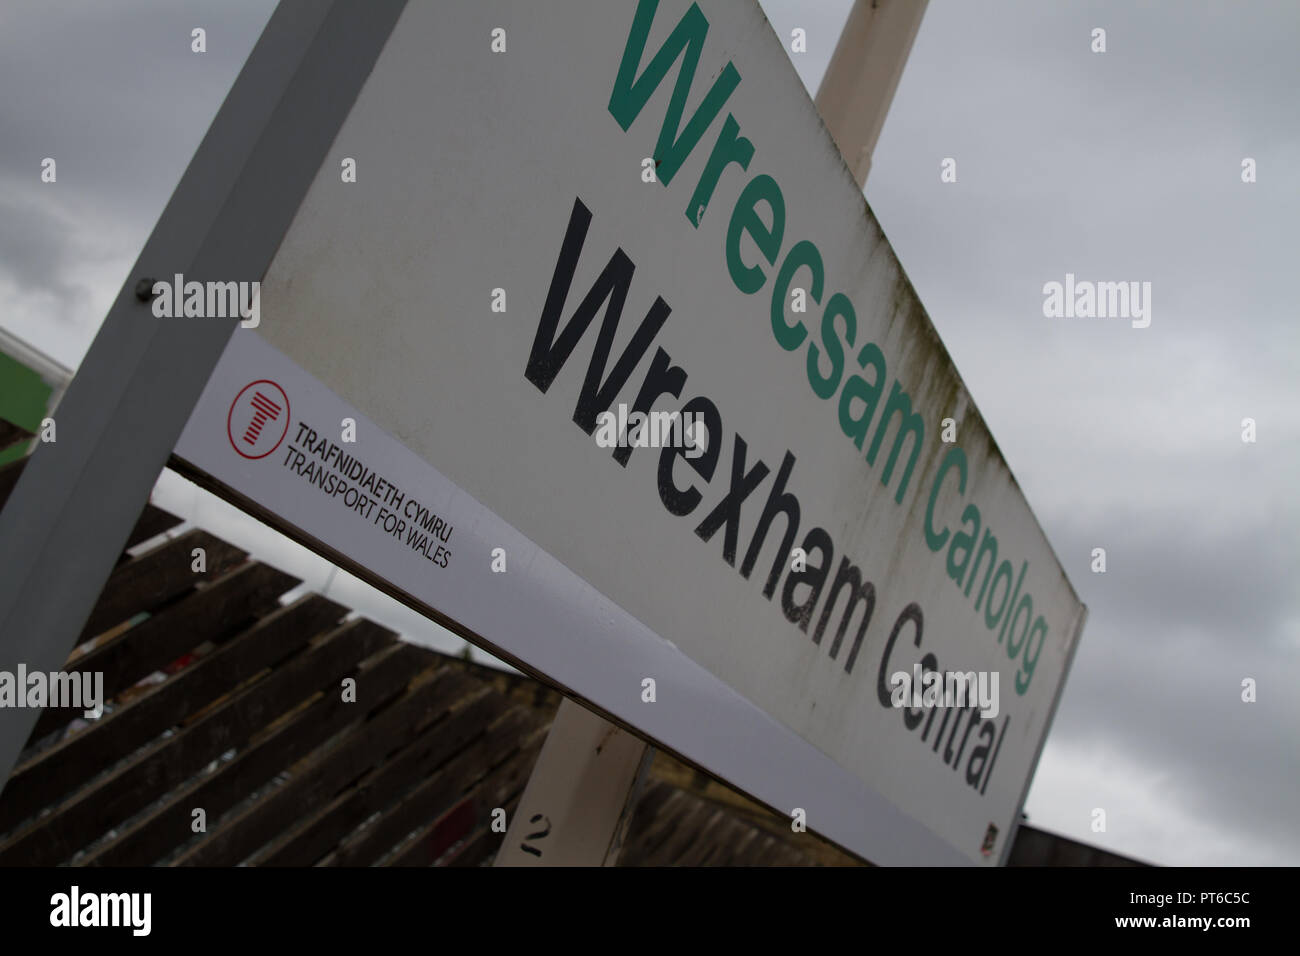 La Estación Central de Ferrocarril de Wrexham en Gales signo contra el cielo gris, mostrando el transporte para Gales marca llevada por el nuevo operador de tren Keolis Amey. Foto de stock